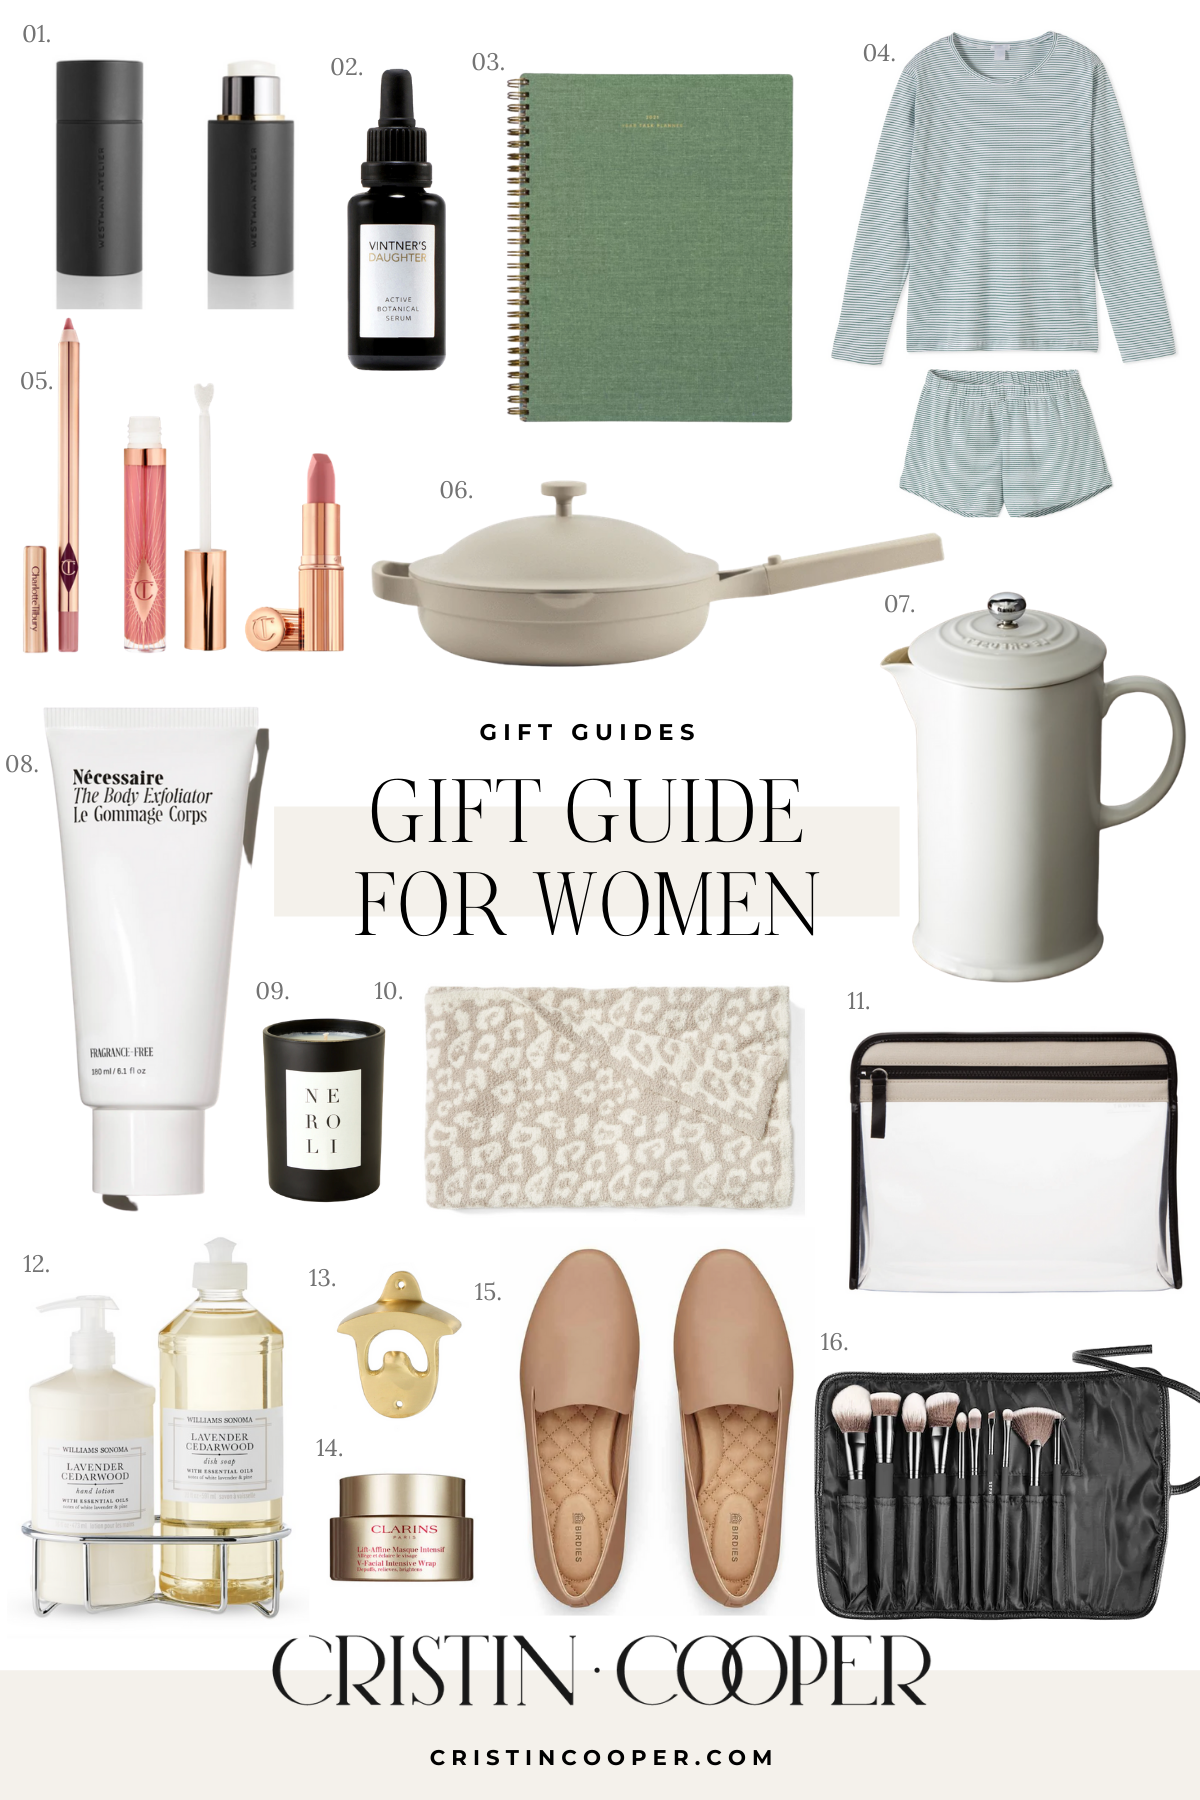 Blogger Cristin Cooper shares her gift guide for women. 